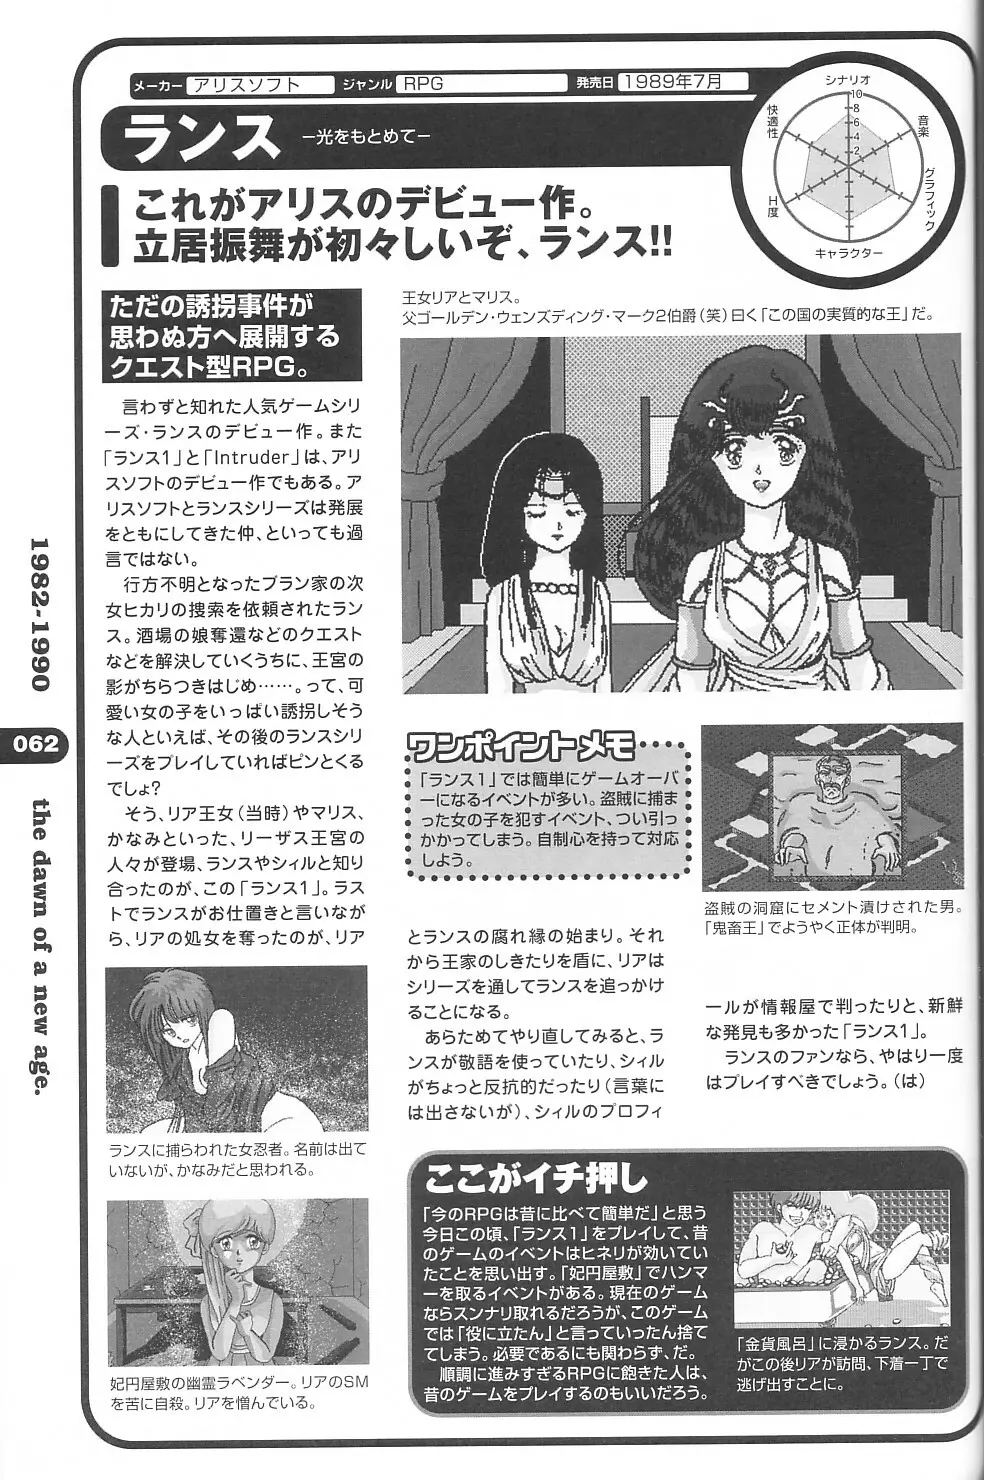 パソコン美少女ゲーム歴史大全1982-2000 54ページ